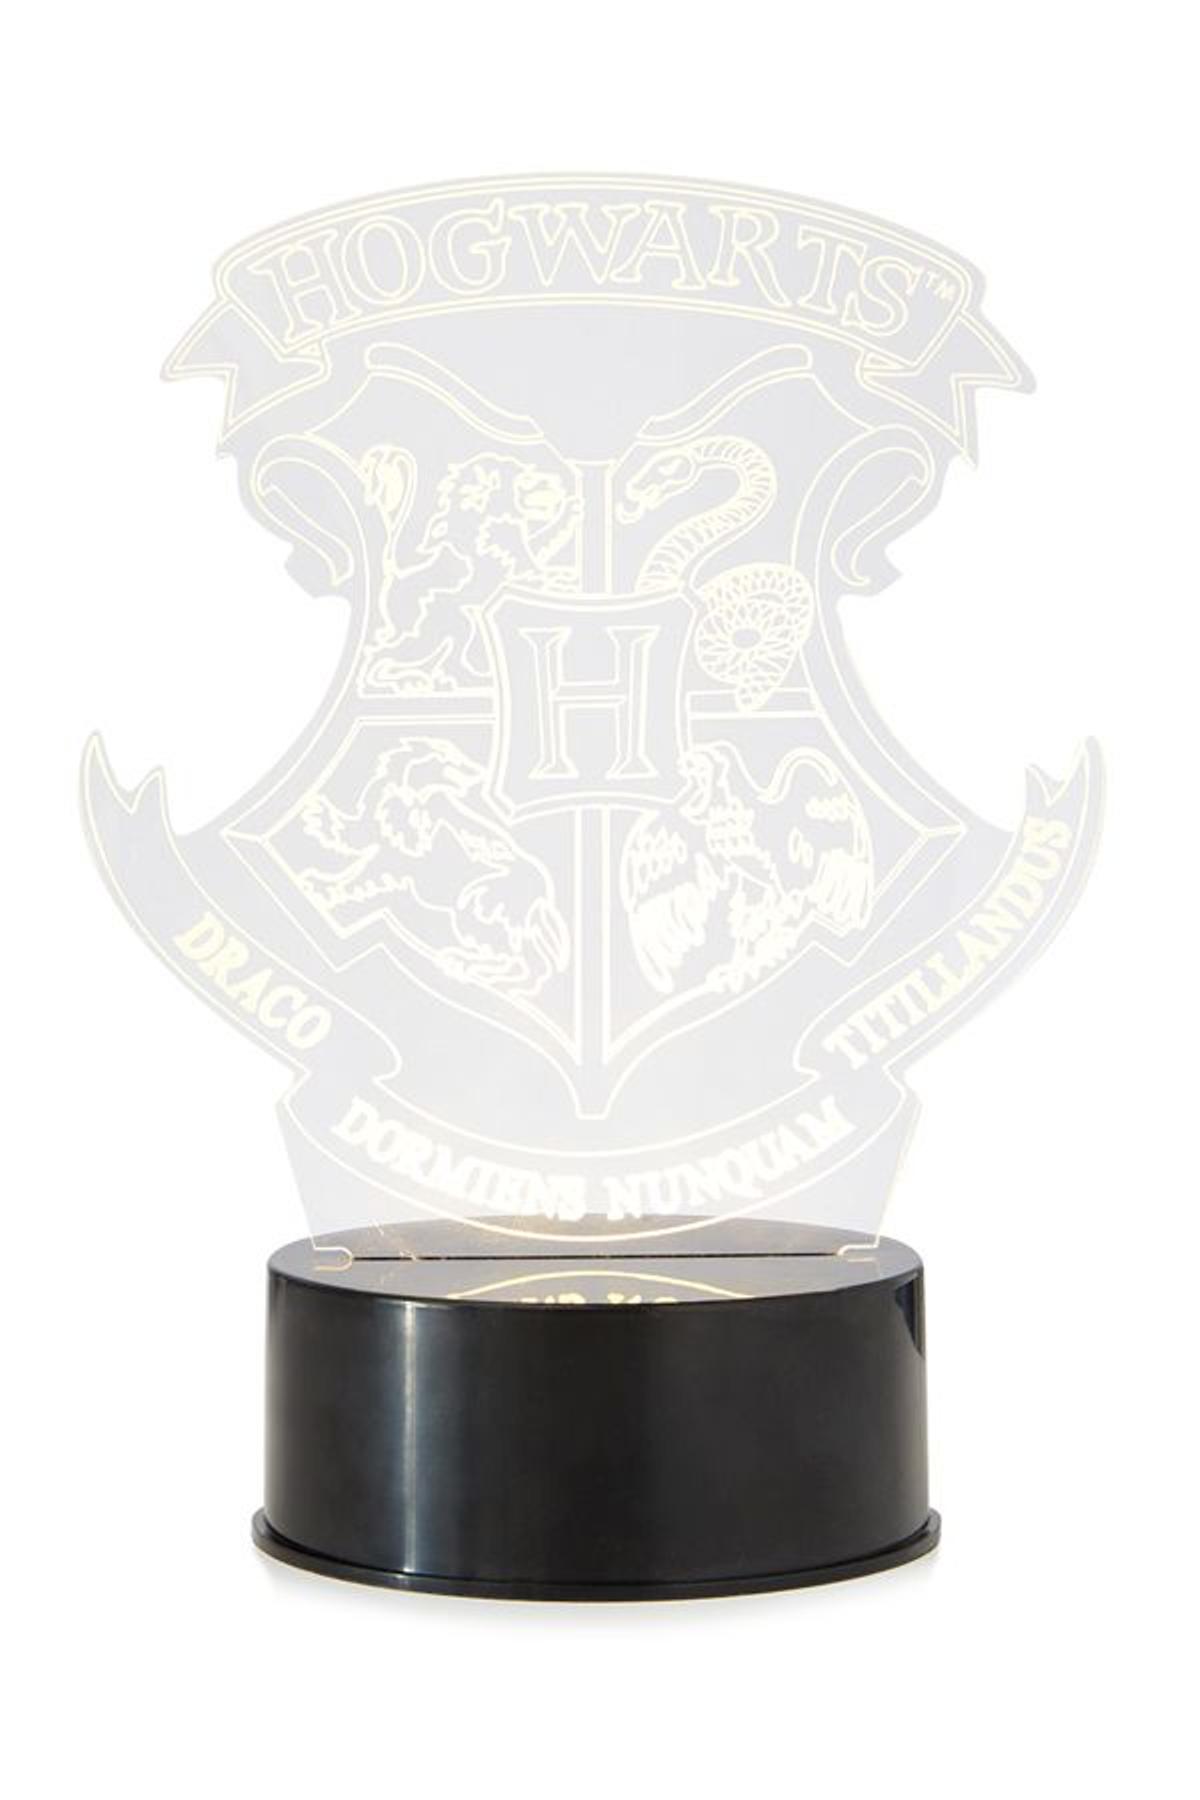 La colección de Harry Potter de Primark: escudo de Hogwarts